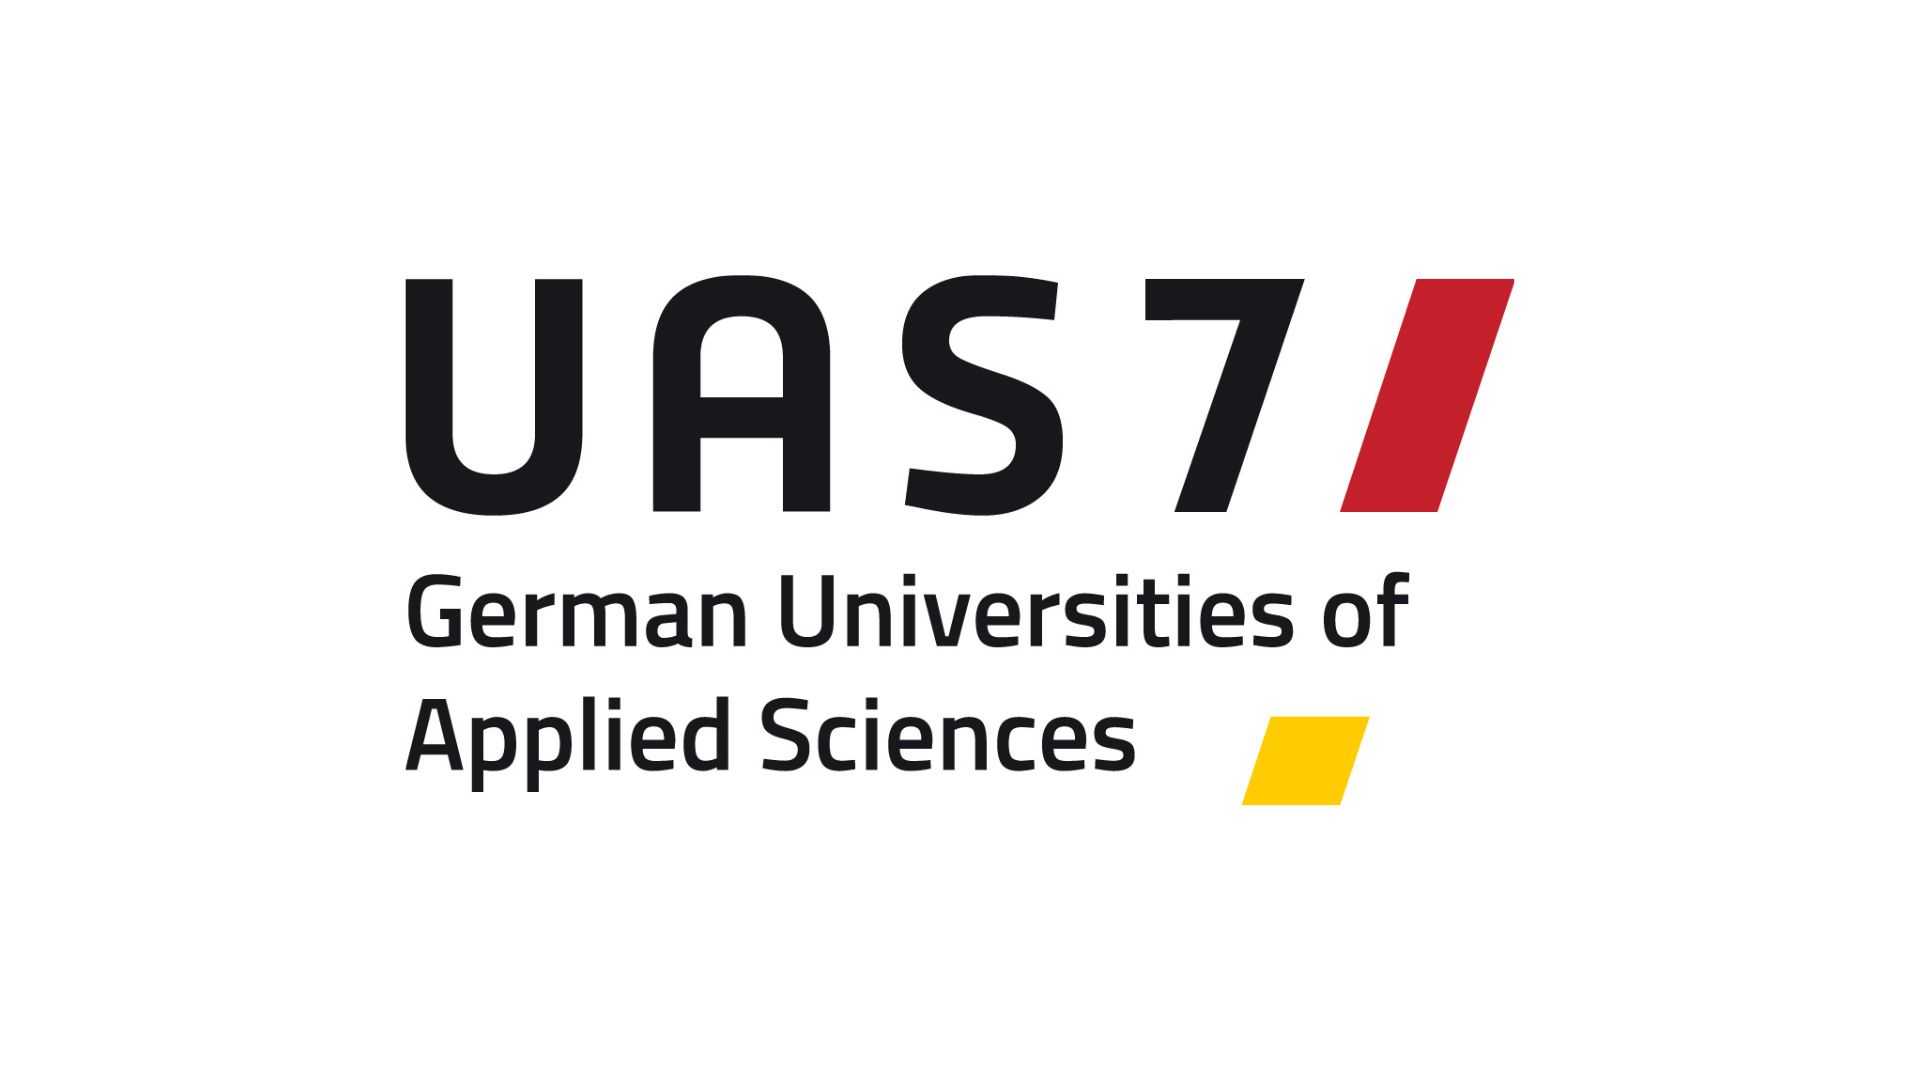 German Universities of Applied Sciences (UAS7)